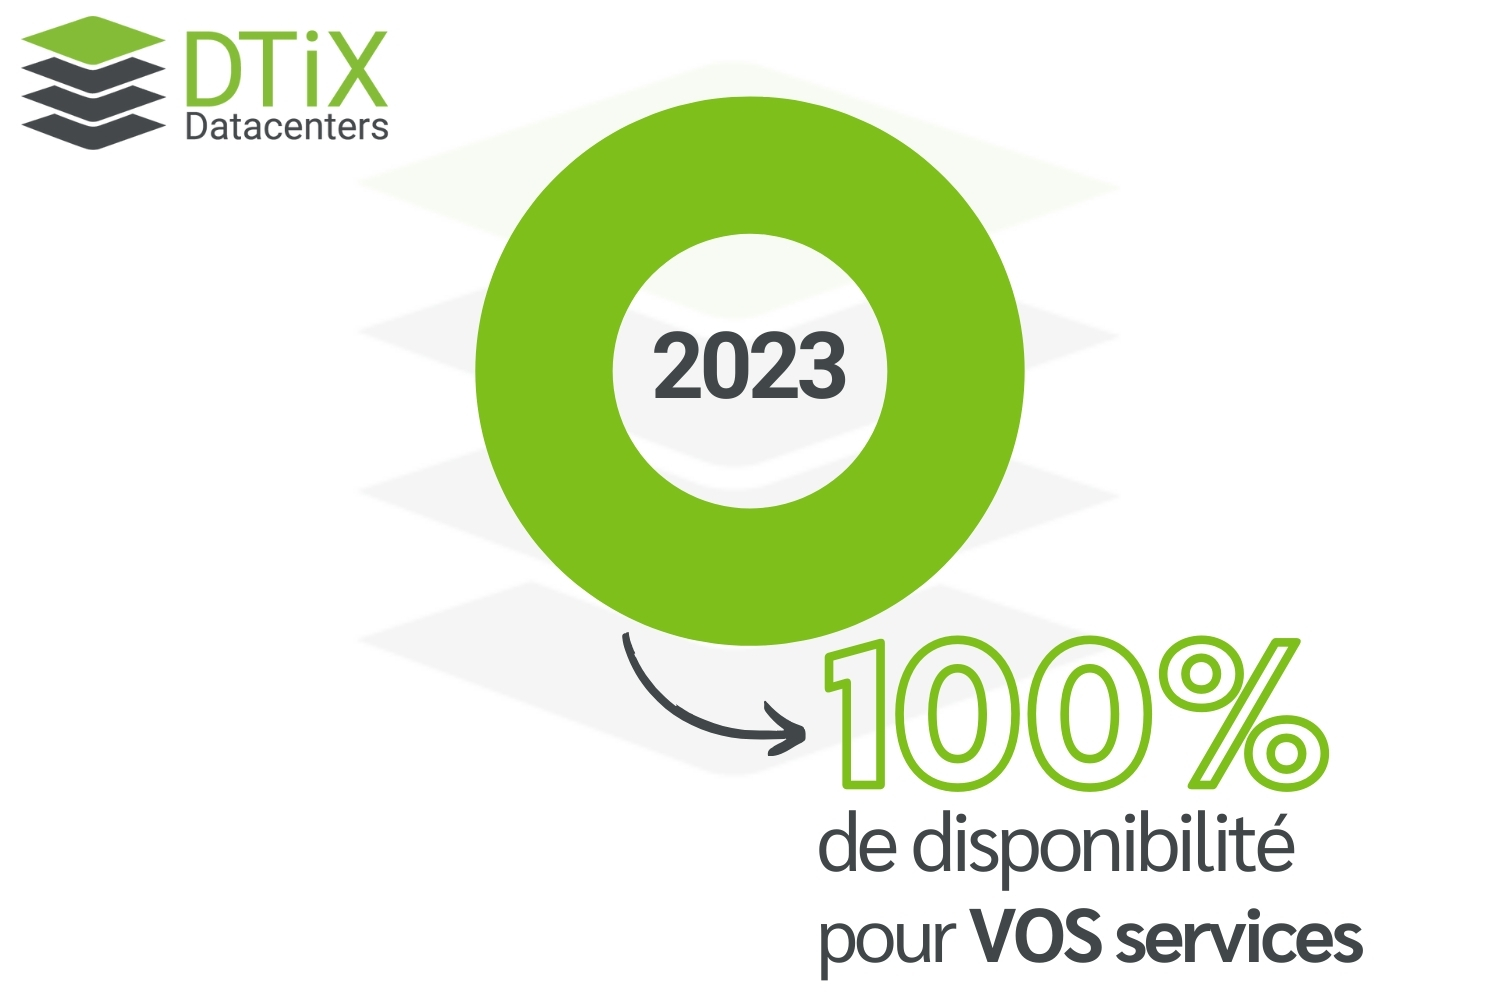 Image de la disponibilité - 100% de disponibilité pour vos services - DTiX Datacenters